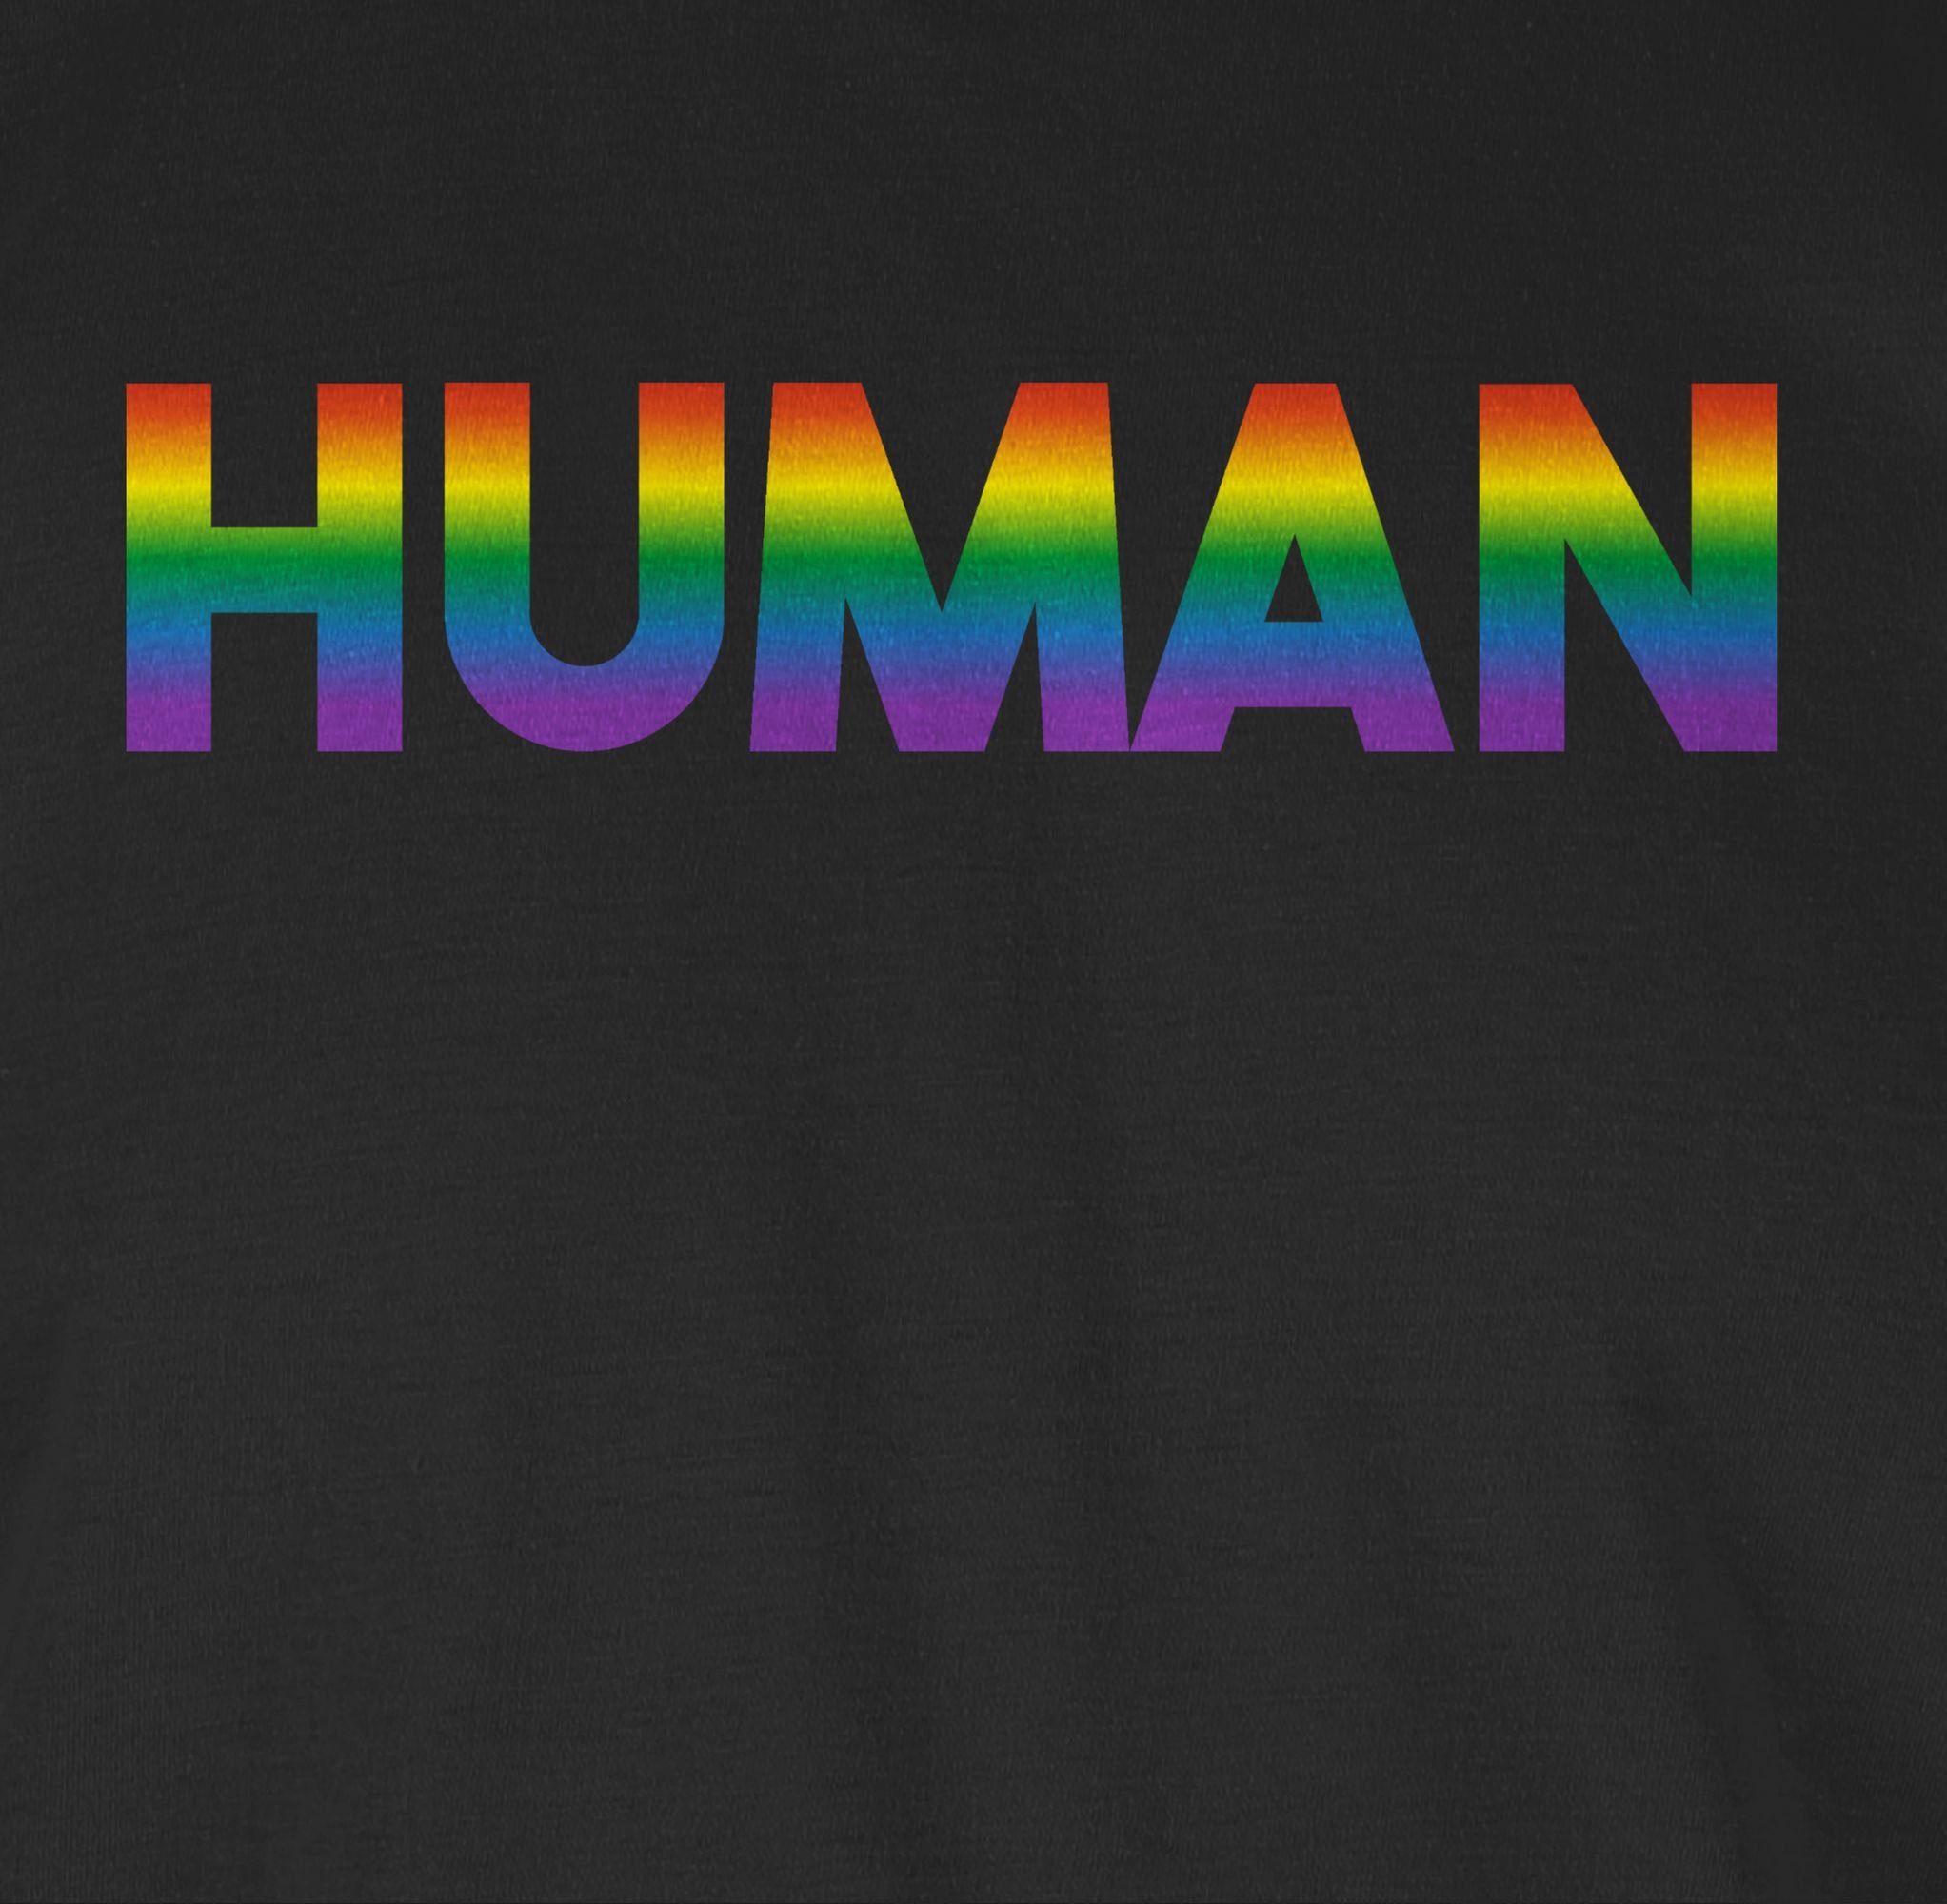 Human LGBT Kleidung T-Shirt Regenbogen Shirtracer 01 - Schwarz - Schriftzug